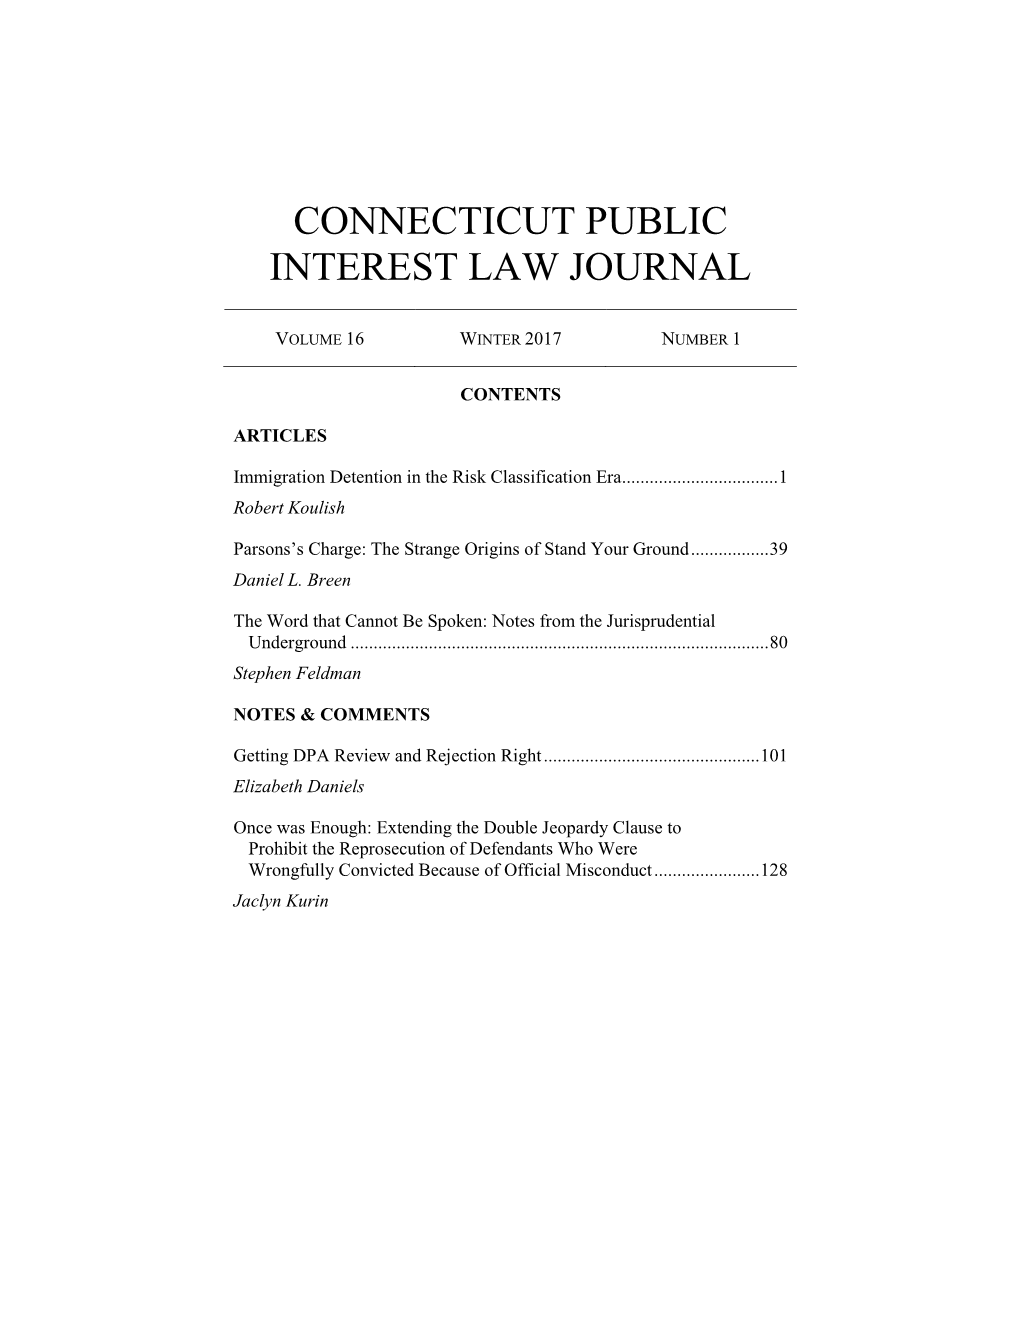 Connecticut Public Interest Law Journal